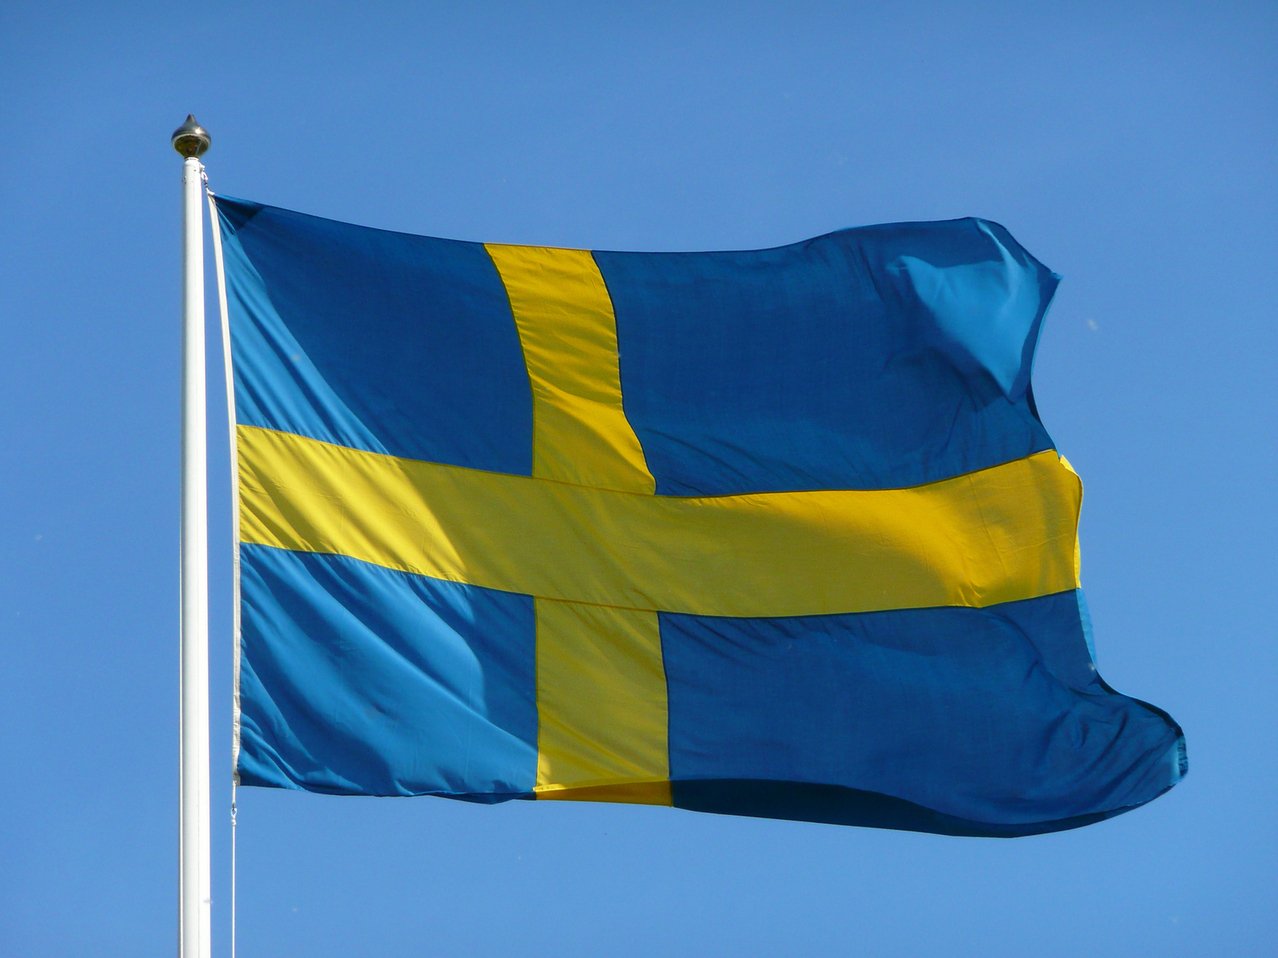 Suedia s-a răzgândit și anunță că nu mai exclude aderarea la NATO